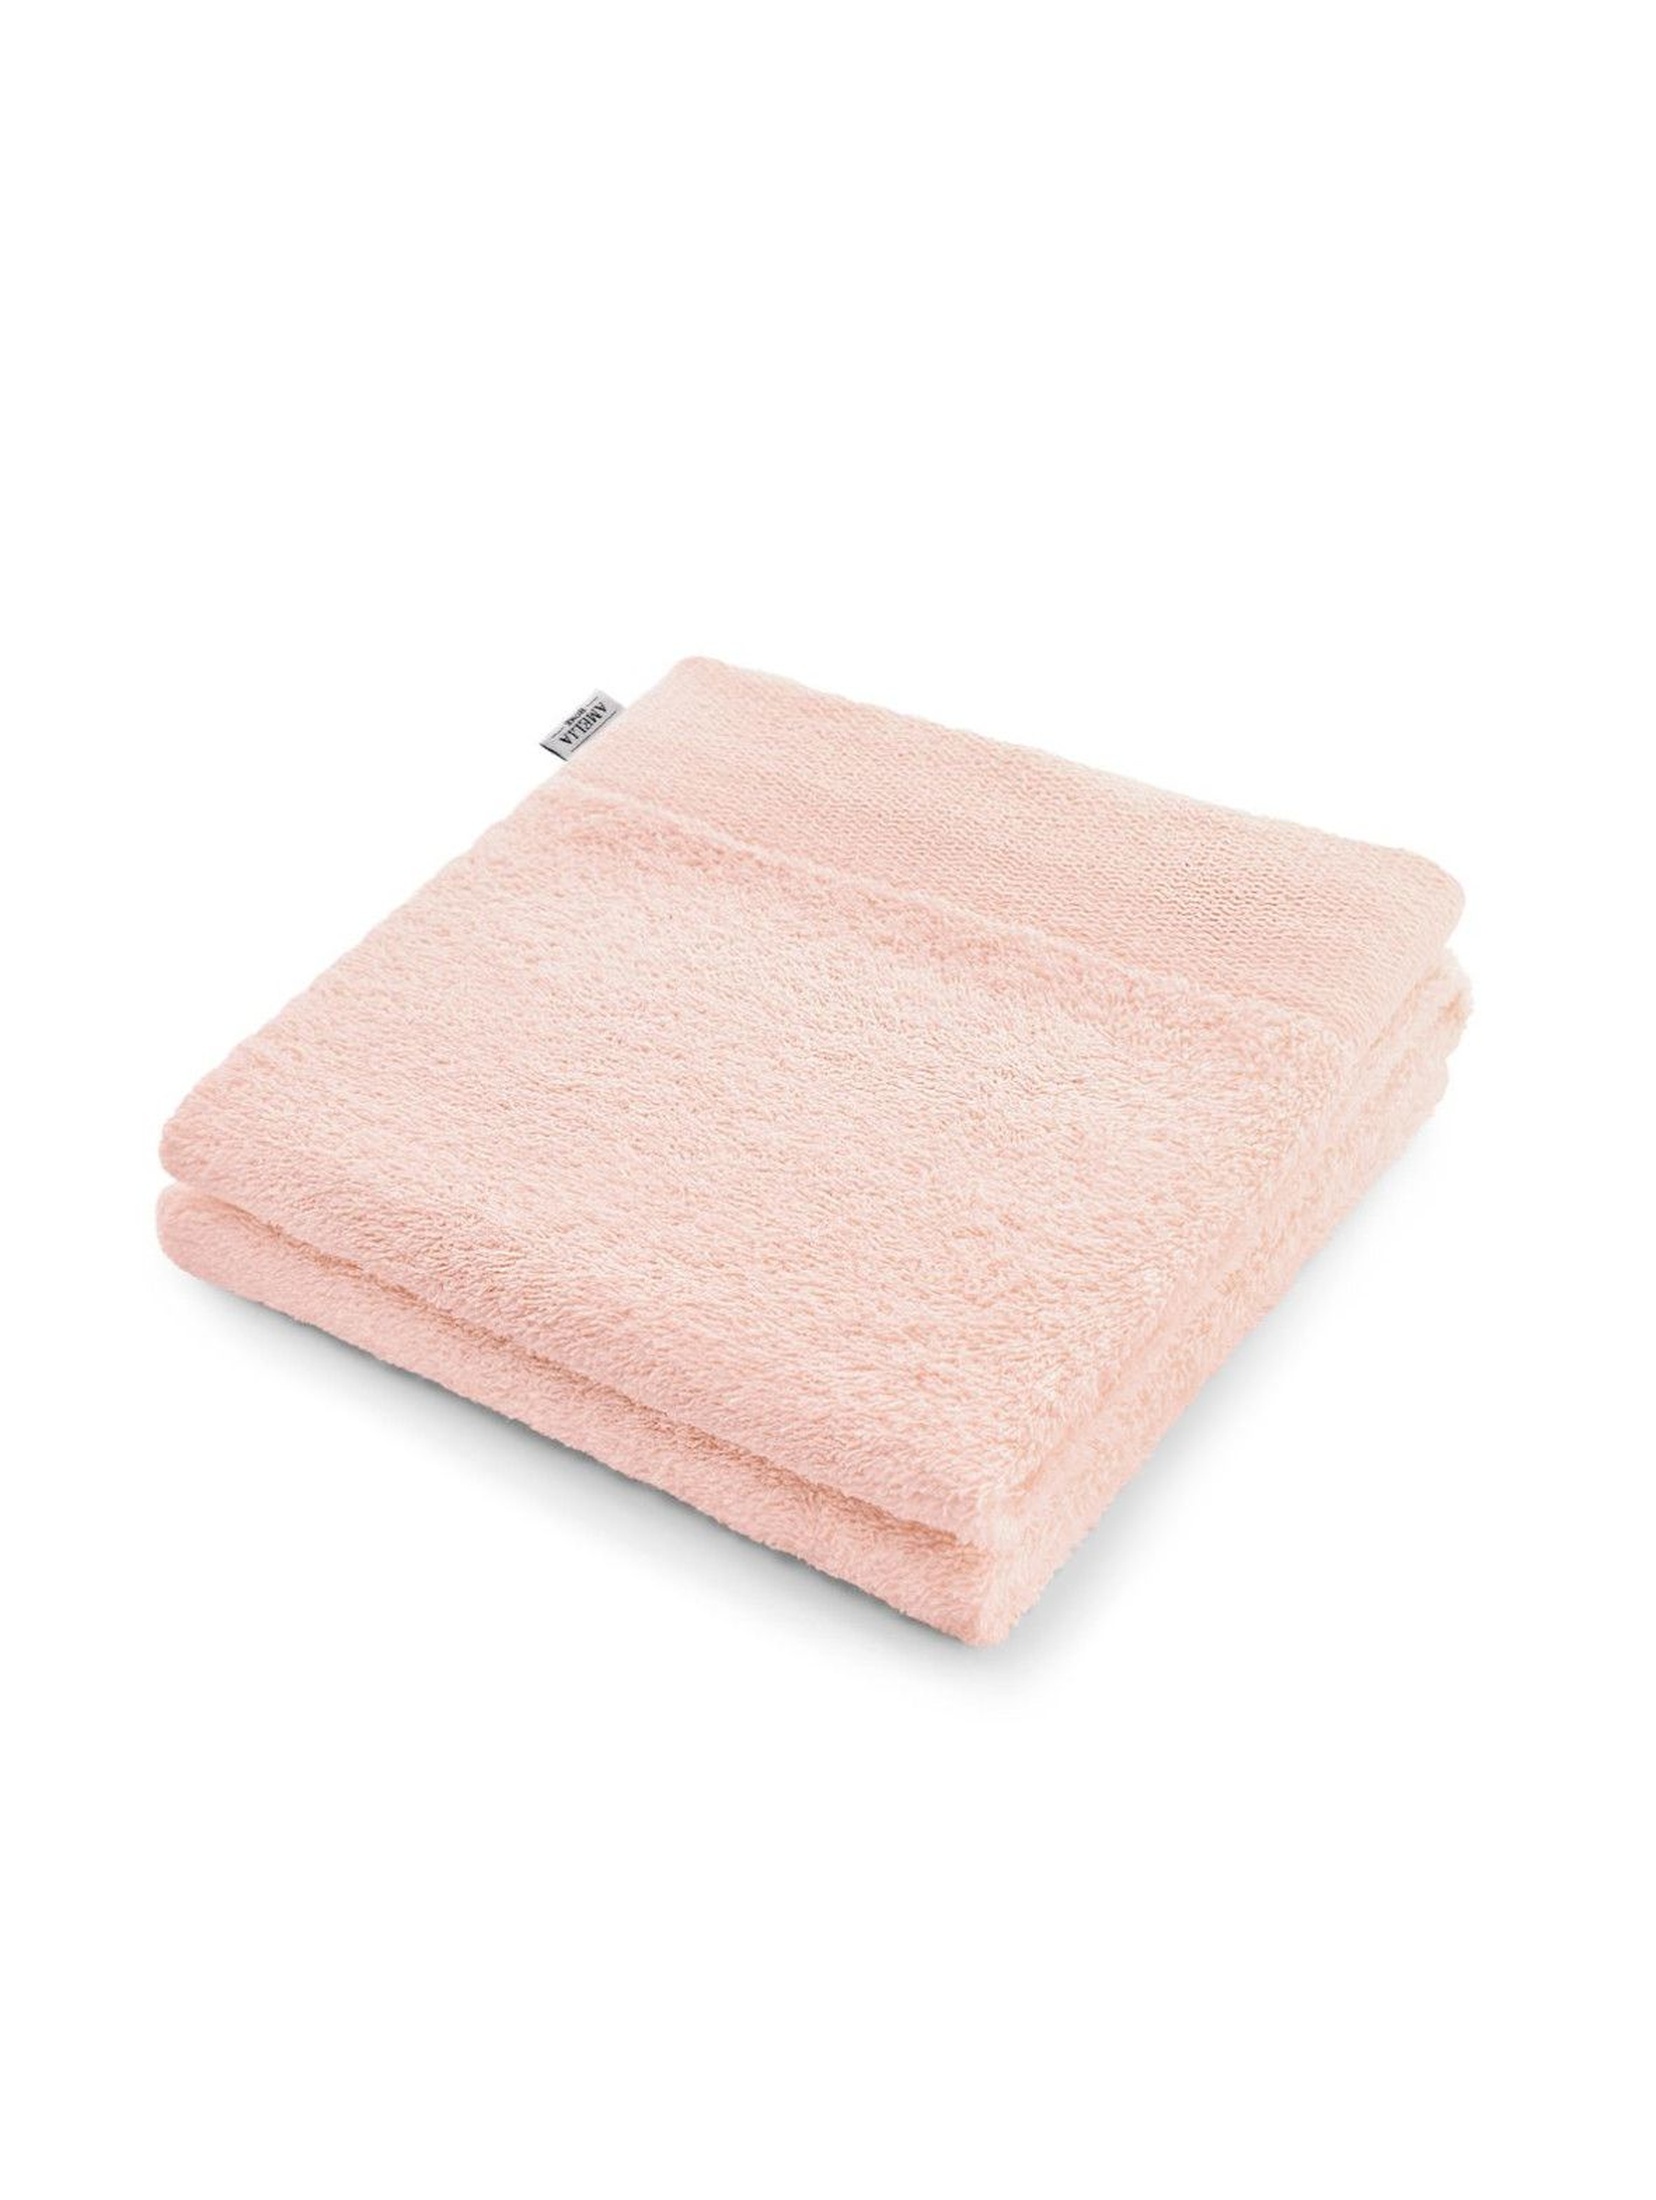 Ręcznik bawełniany AmeliaHome różowy - 50x100cm